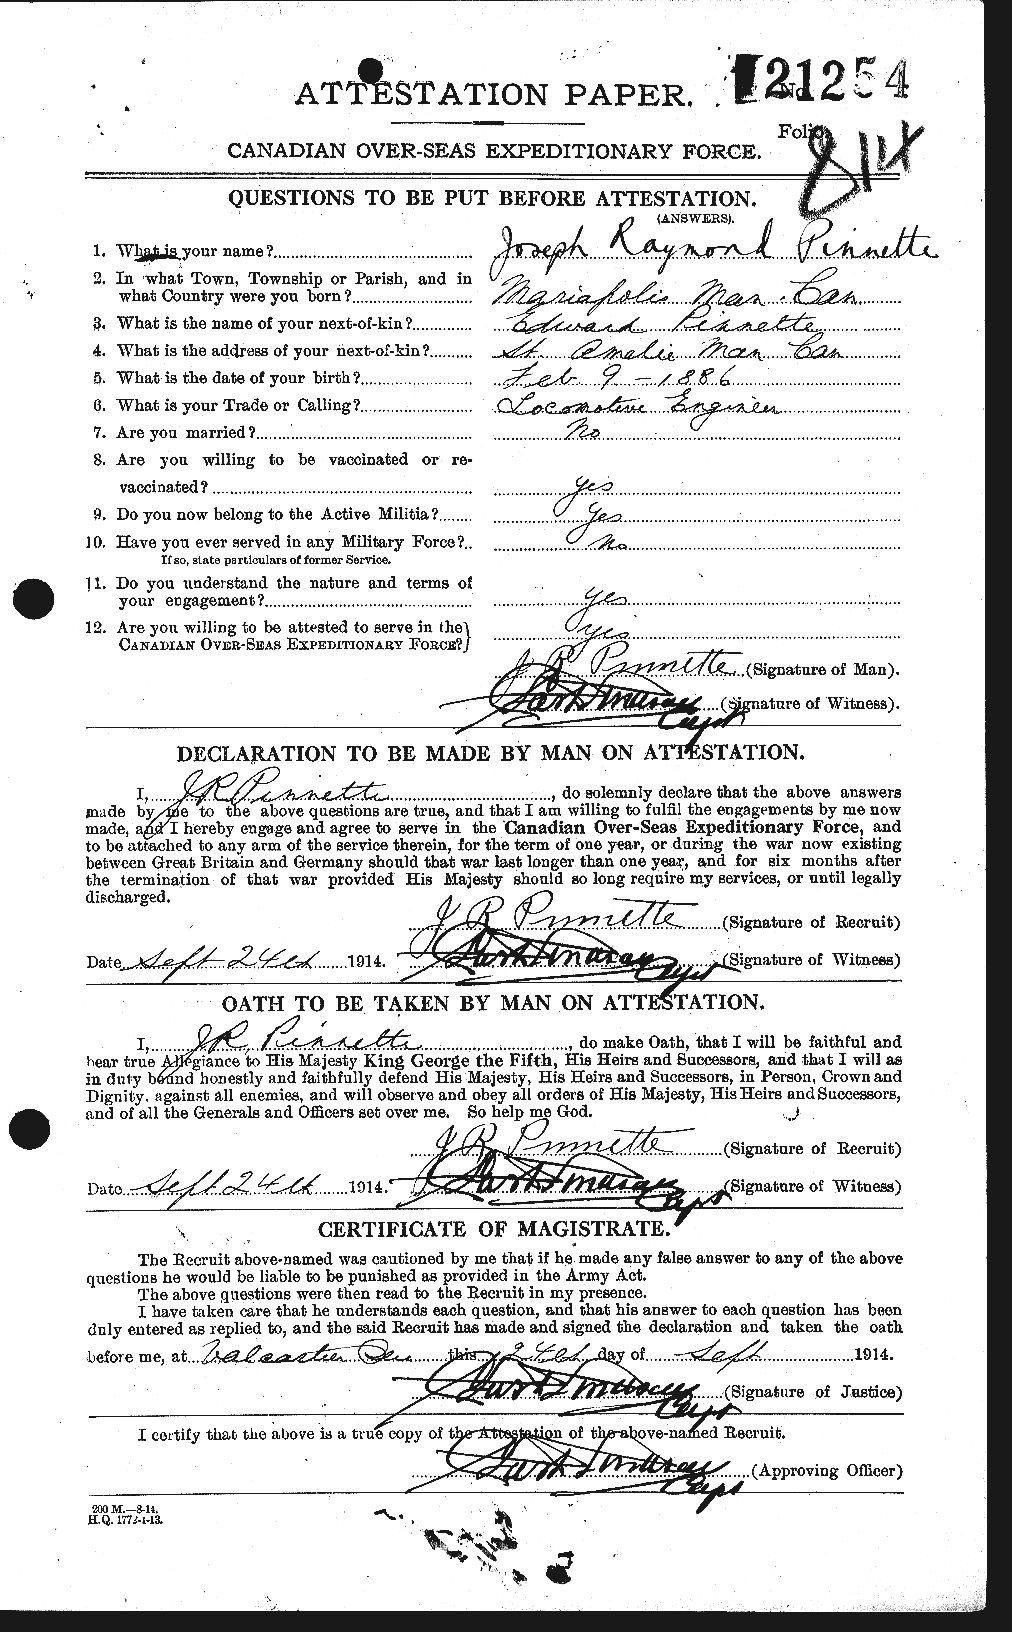 Dossiers du Personnel de la Première Guerre mondiale - CEC 582724a